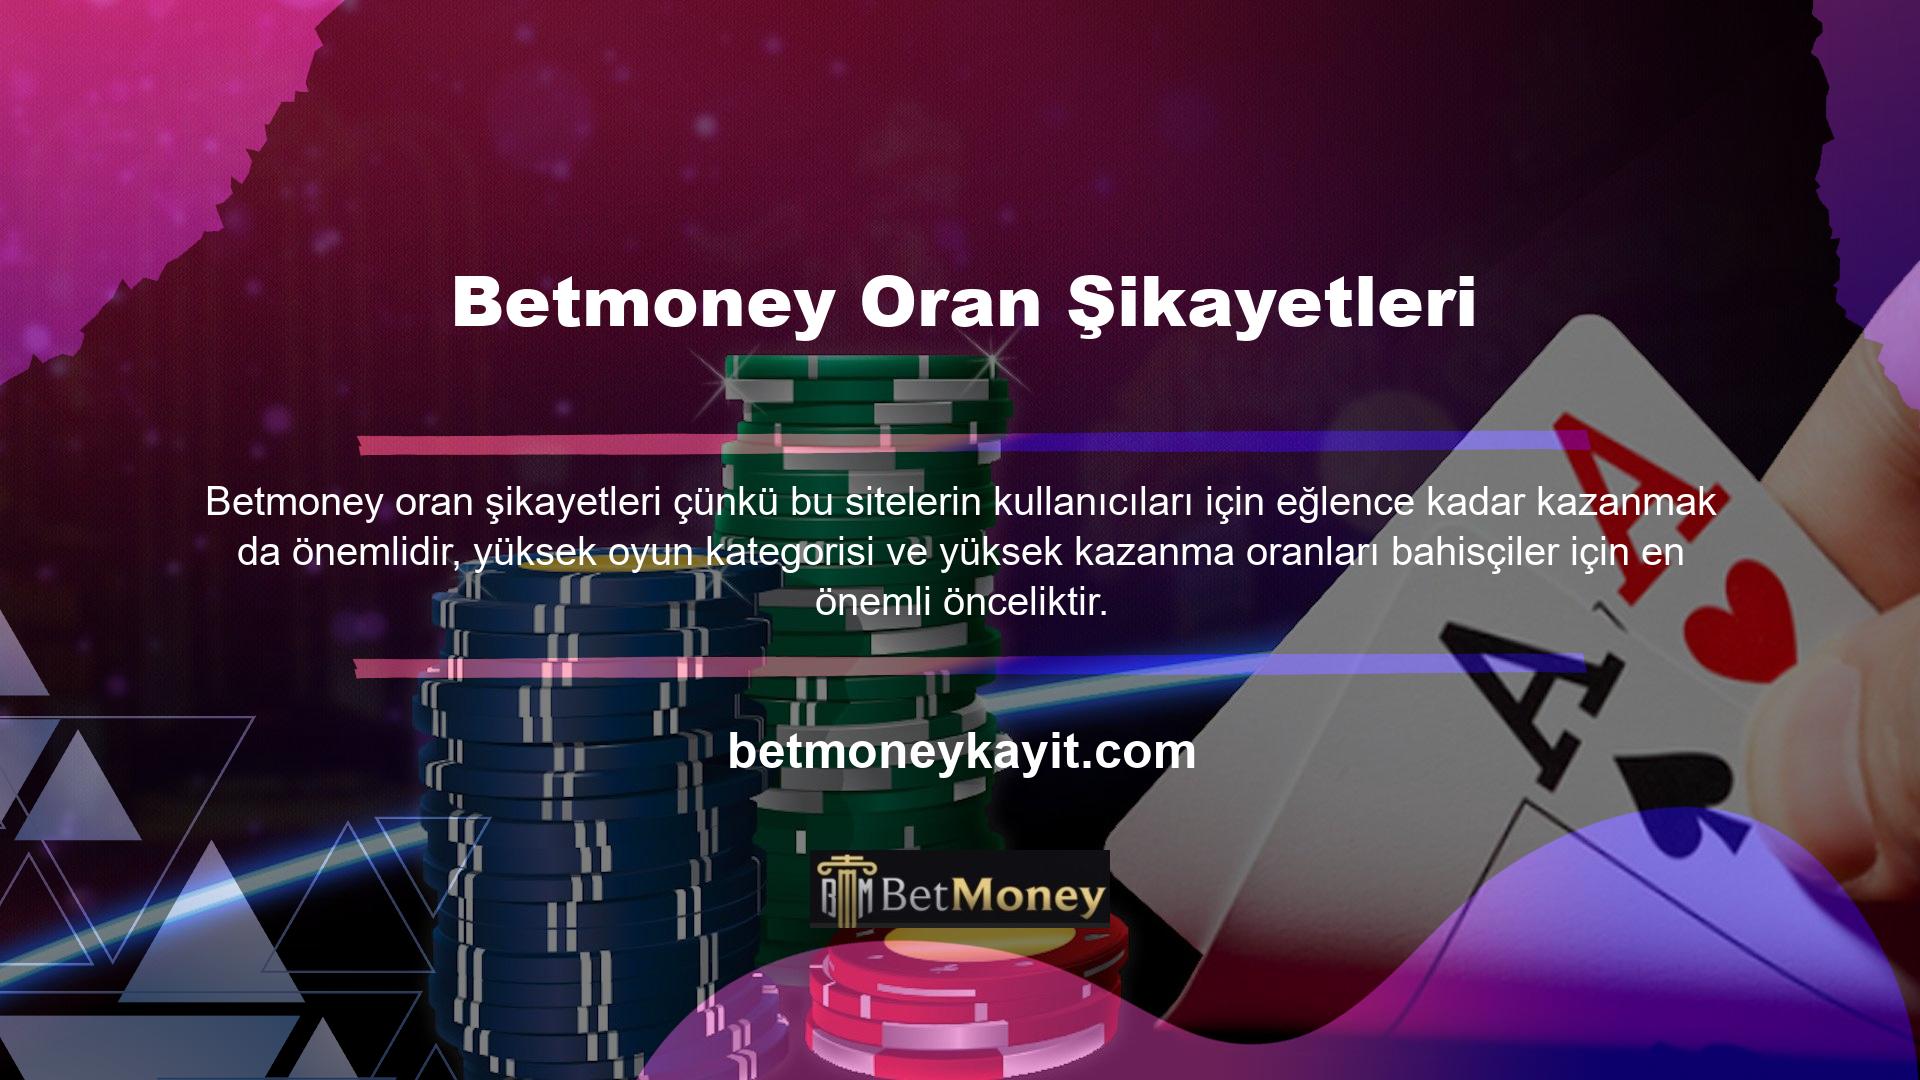 Tespit edilen popüler web sitelerinden biri olan Betmoney, bunun bir casino şikayetinden daha fazlası olduğu yönündeki endişelerini dile getirdi